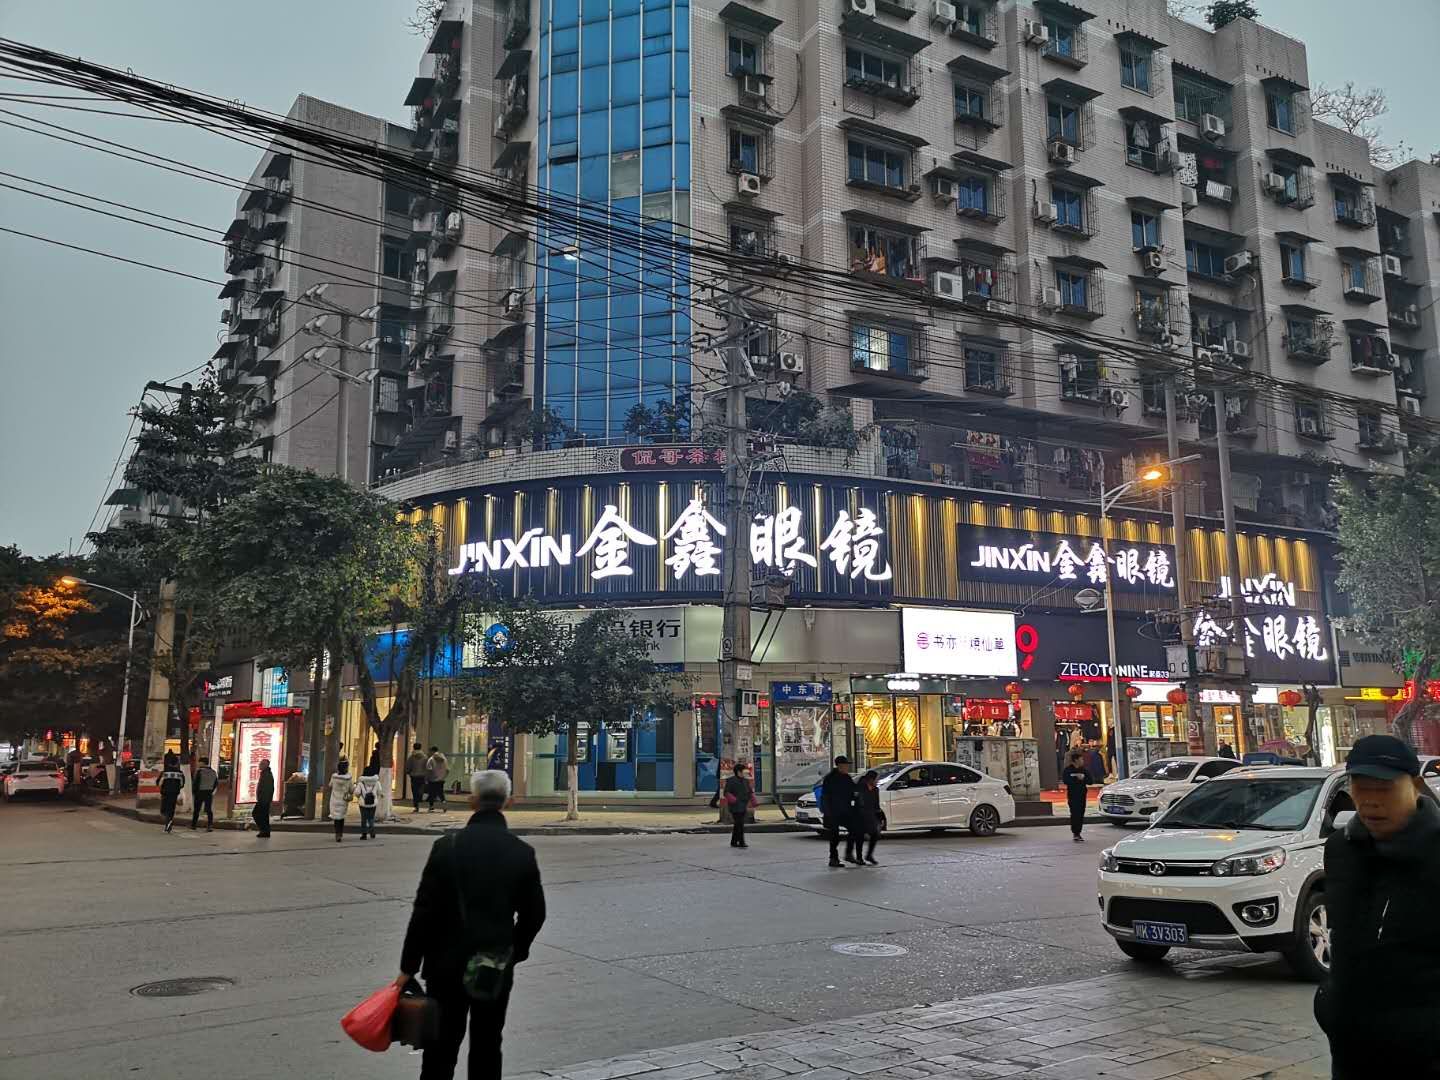 义乌市益明眼镜有限公司的企业标志